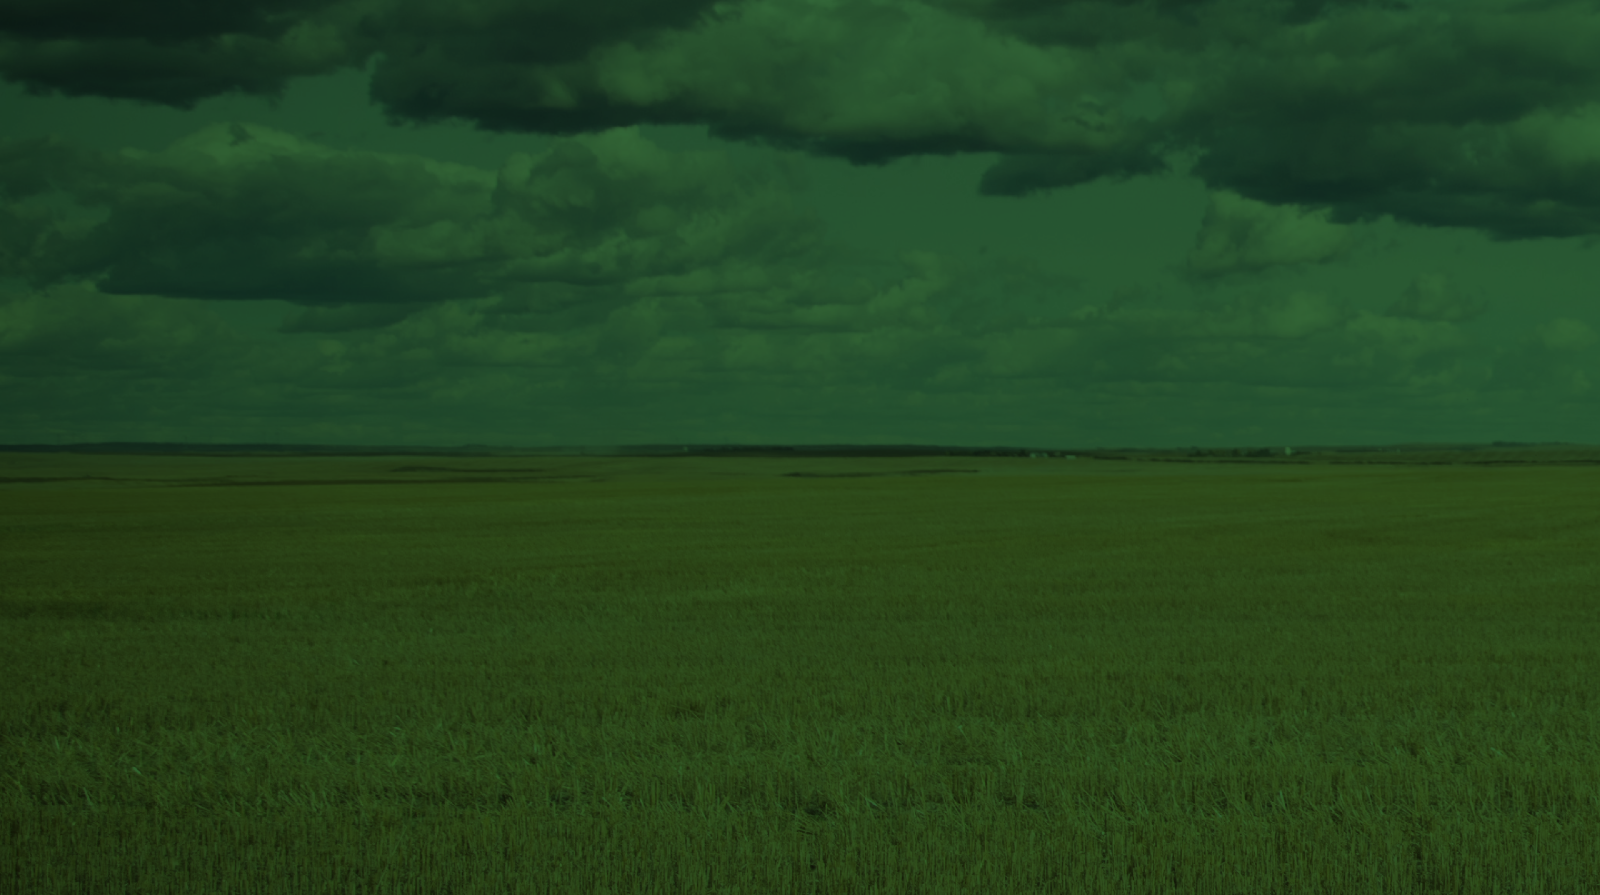 Wheat field under a blue sky